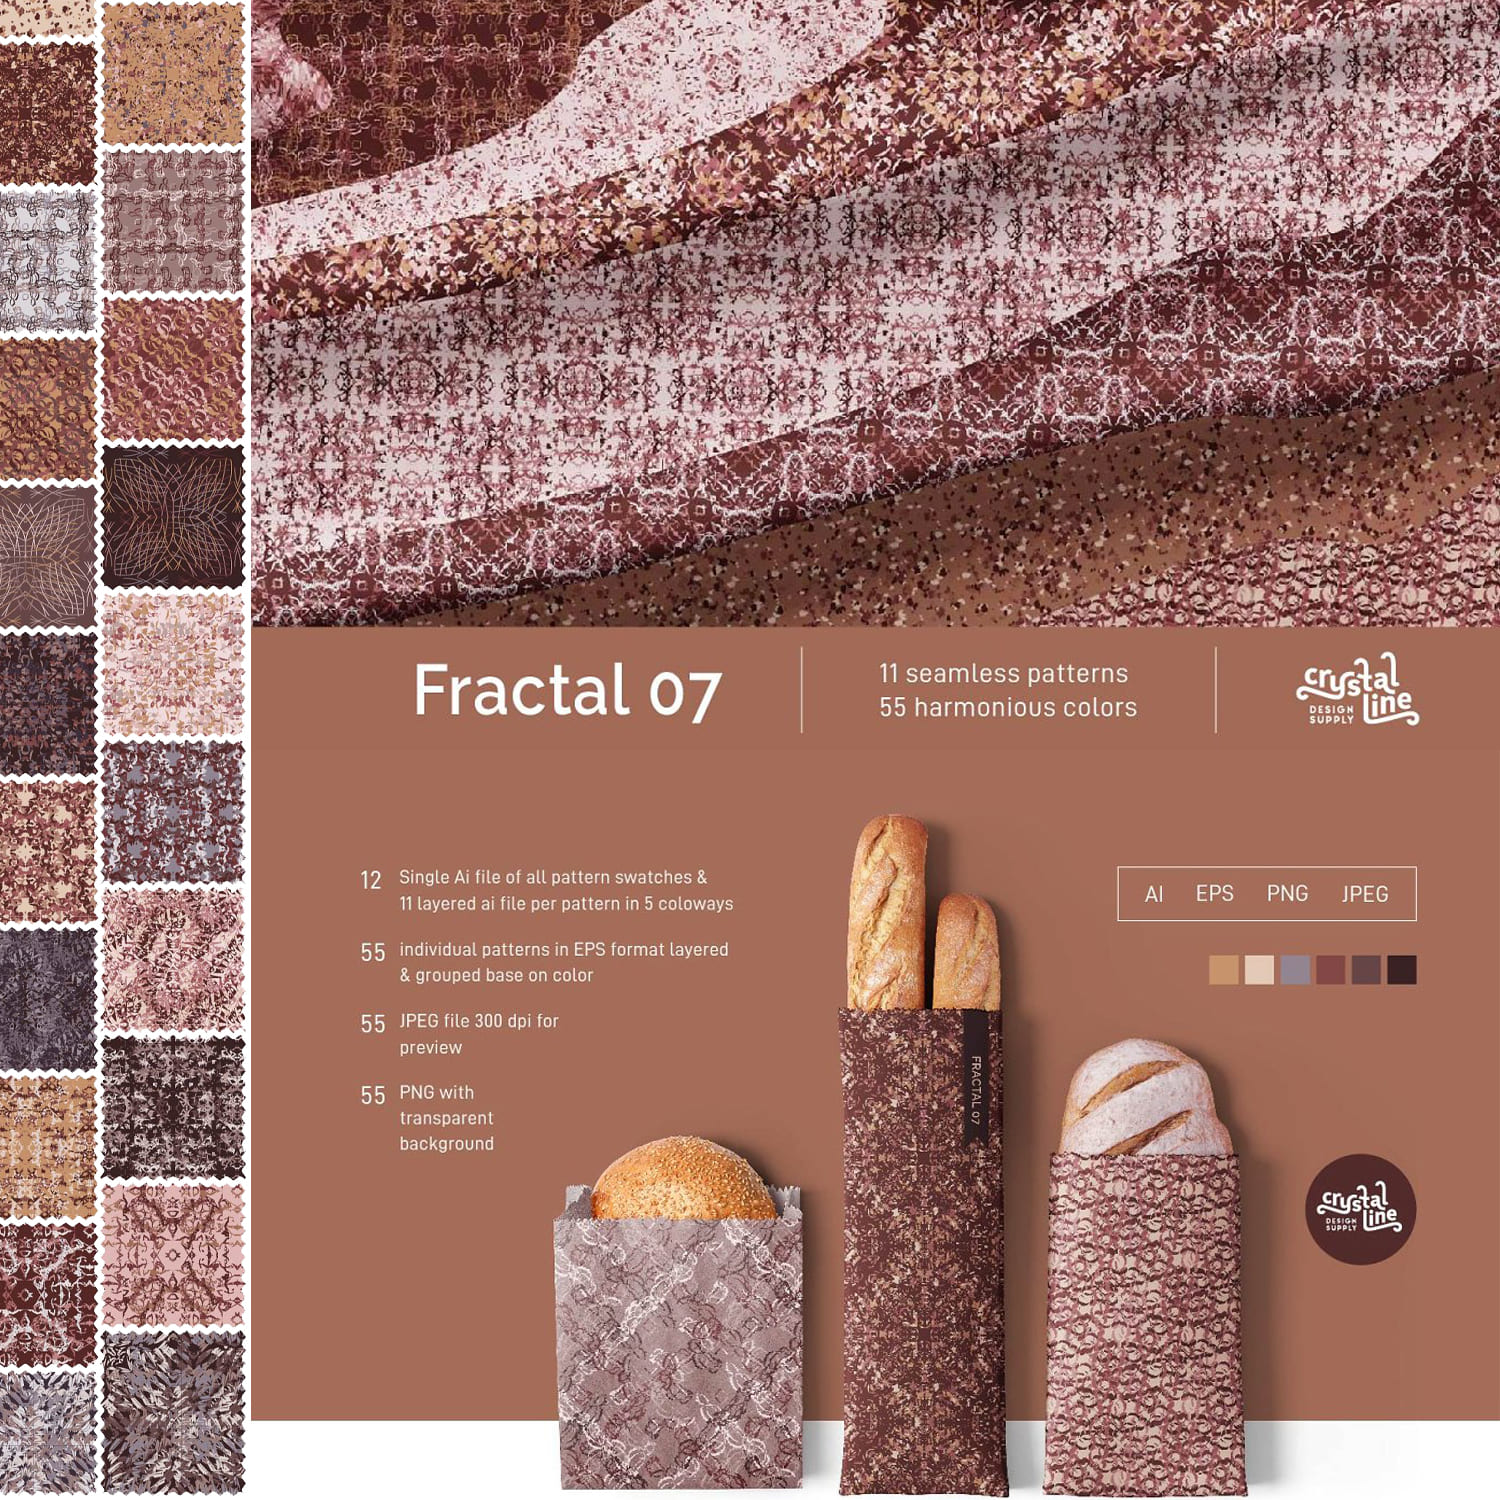 Fractal Patterns 07 cover image.